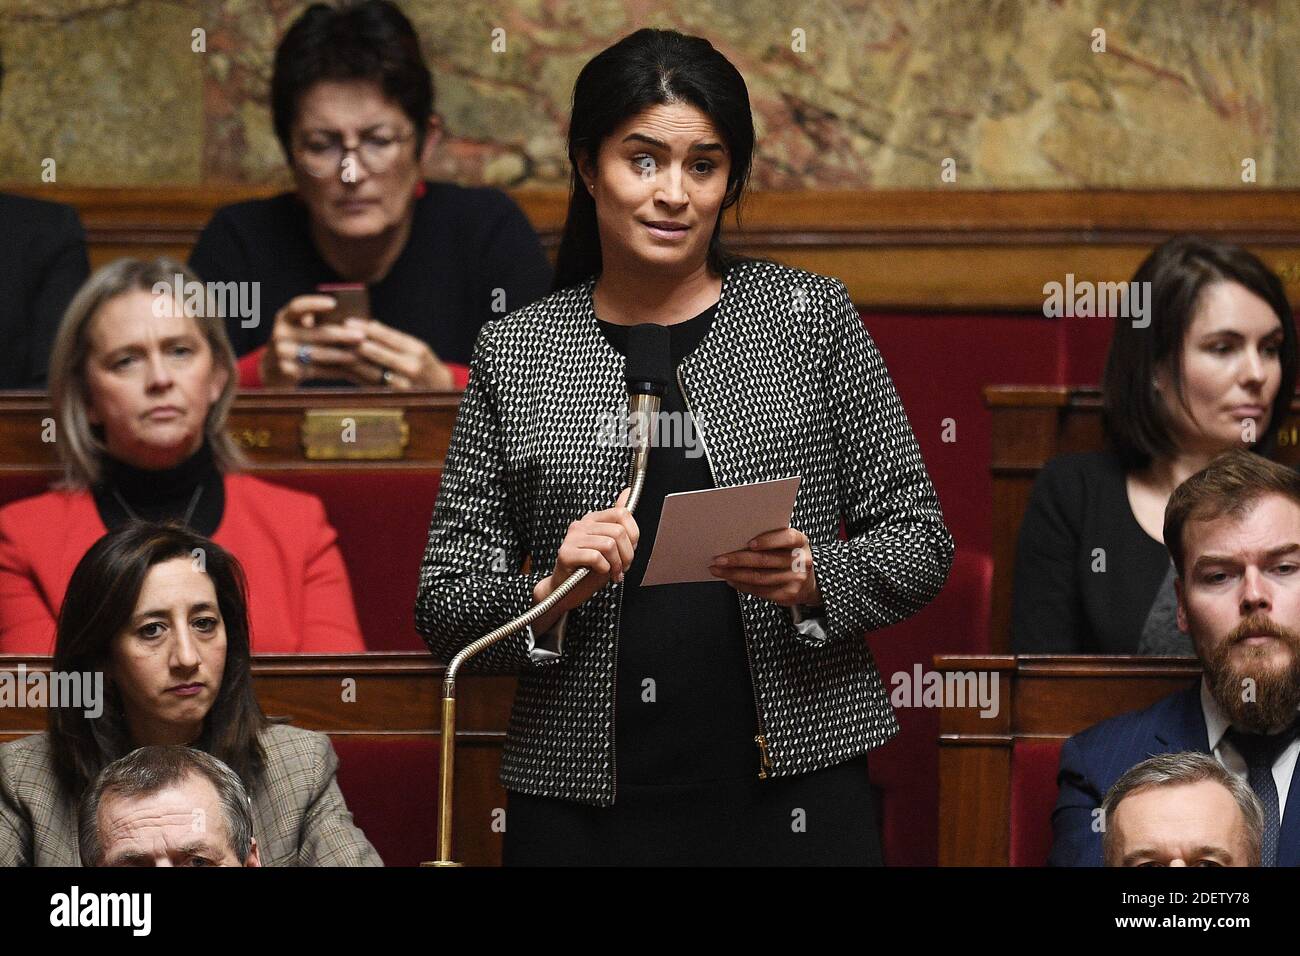 La diputada Sonia Krimi asiste a una sesión de "Preguntas al Gobierno" en la Asamblea Nacional Francesa el 17 de diciembre de 2019 en París, Francia.Foto de David Niviere/ABACAPRESS.COM Foto de stock